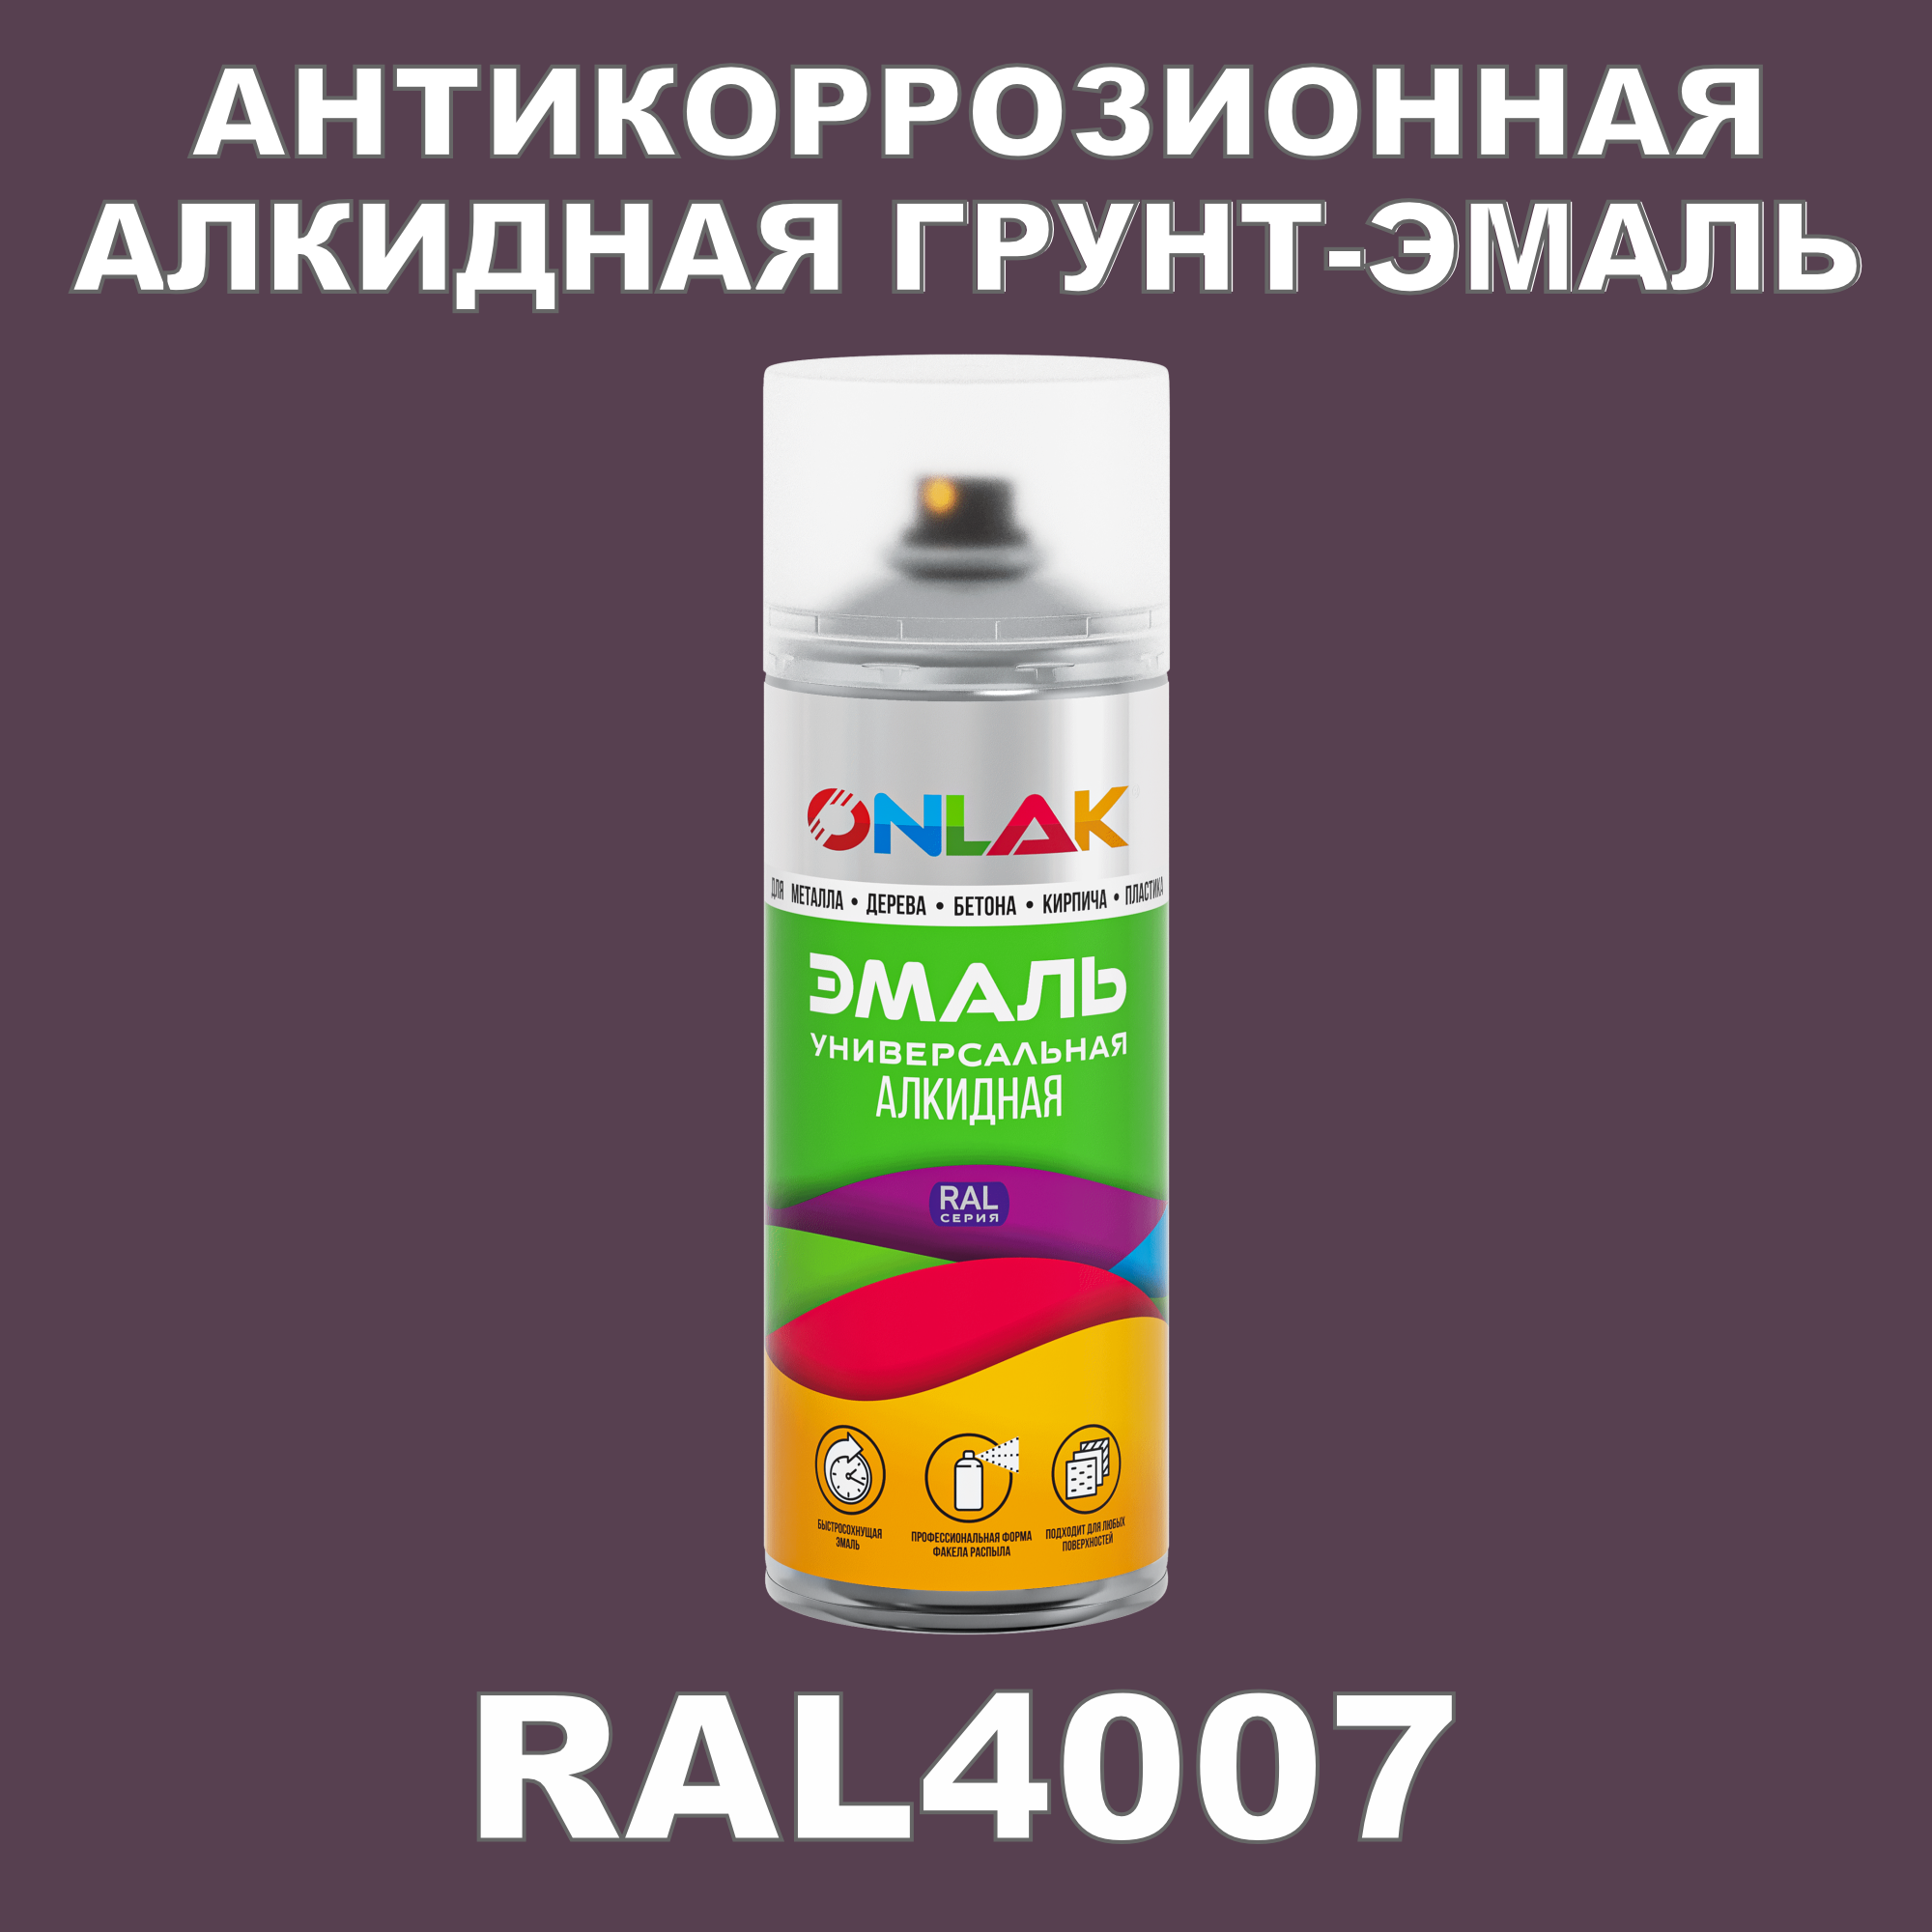 Антикоррозионная грунт-эмаль ONLAK RAL 4007,фиолетовый,572 мл